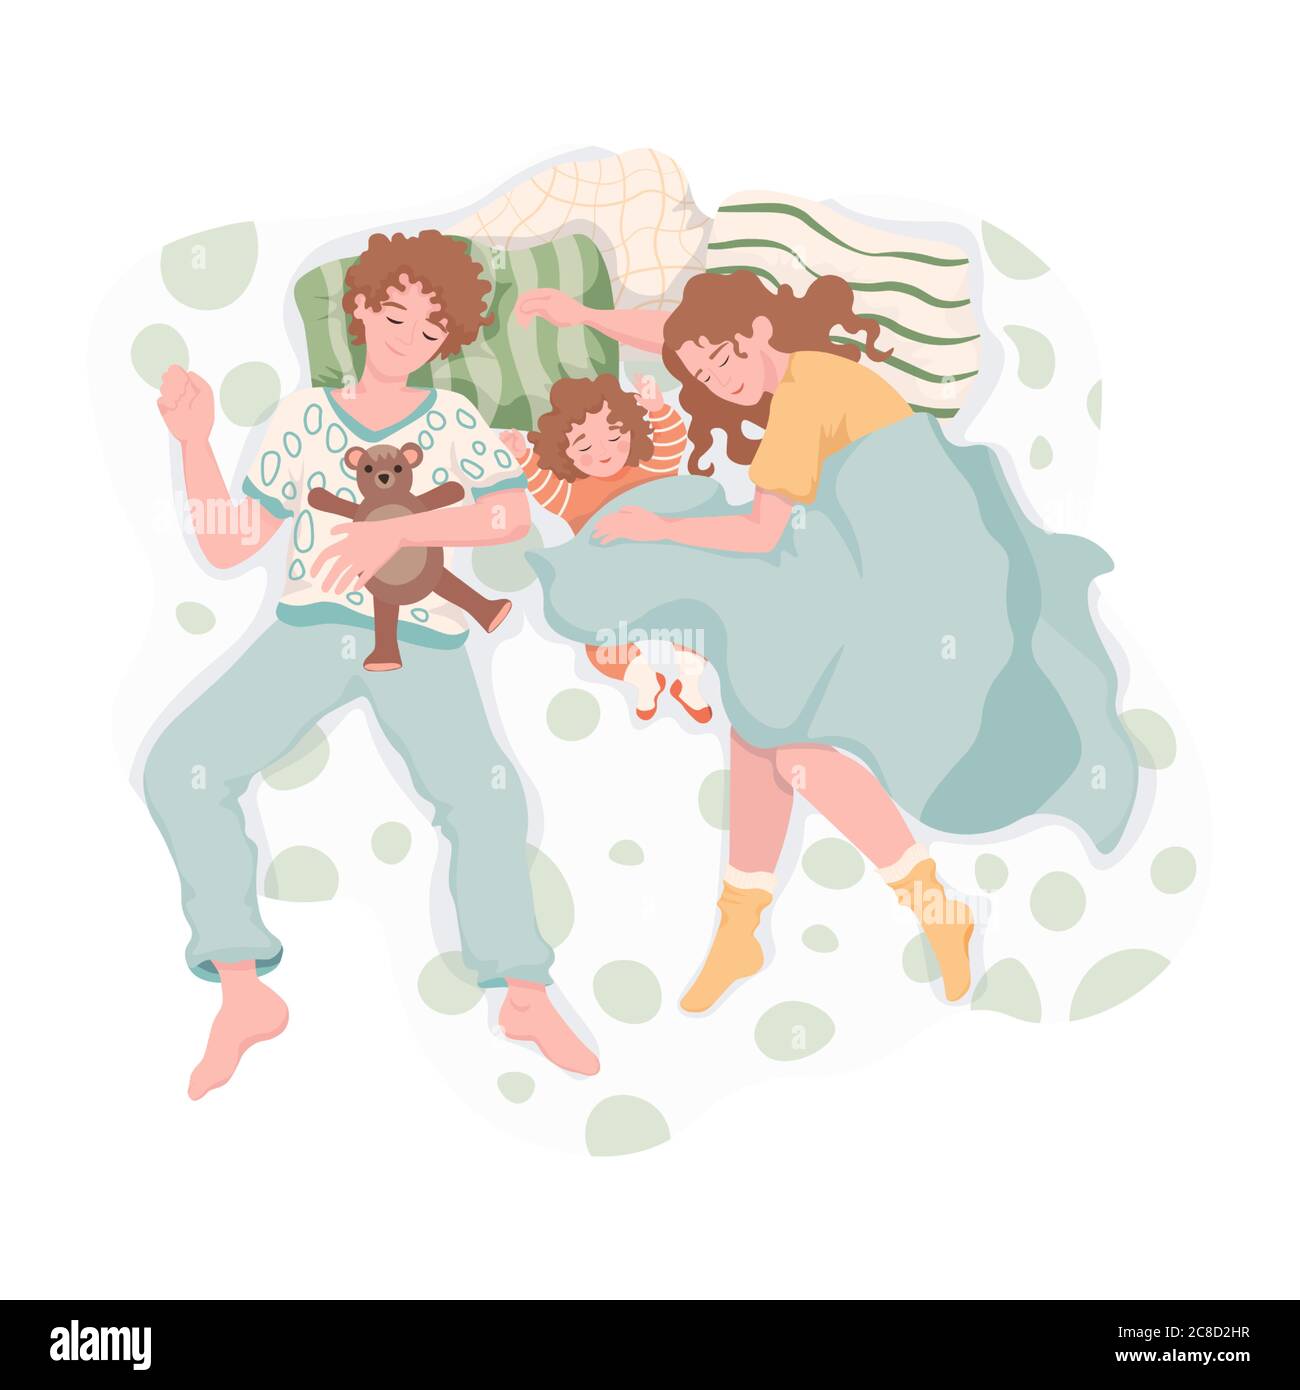 Familie, die sich nachts ausruhte und umarmte. Mutter, Vater und Tochter schlafen zusammen auf dem Bett und träumen Vektor-flache Illustration. Alltag, Familienzeit zusammen. Stock Vektor